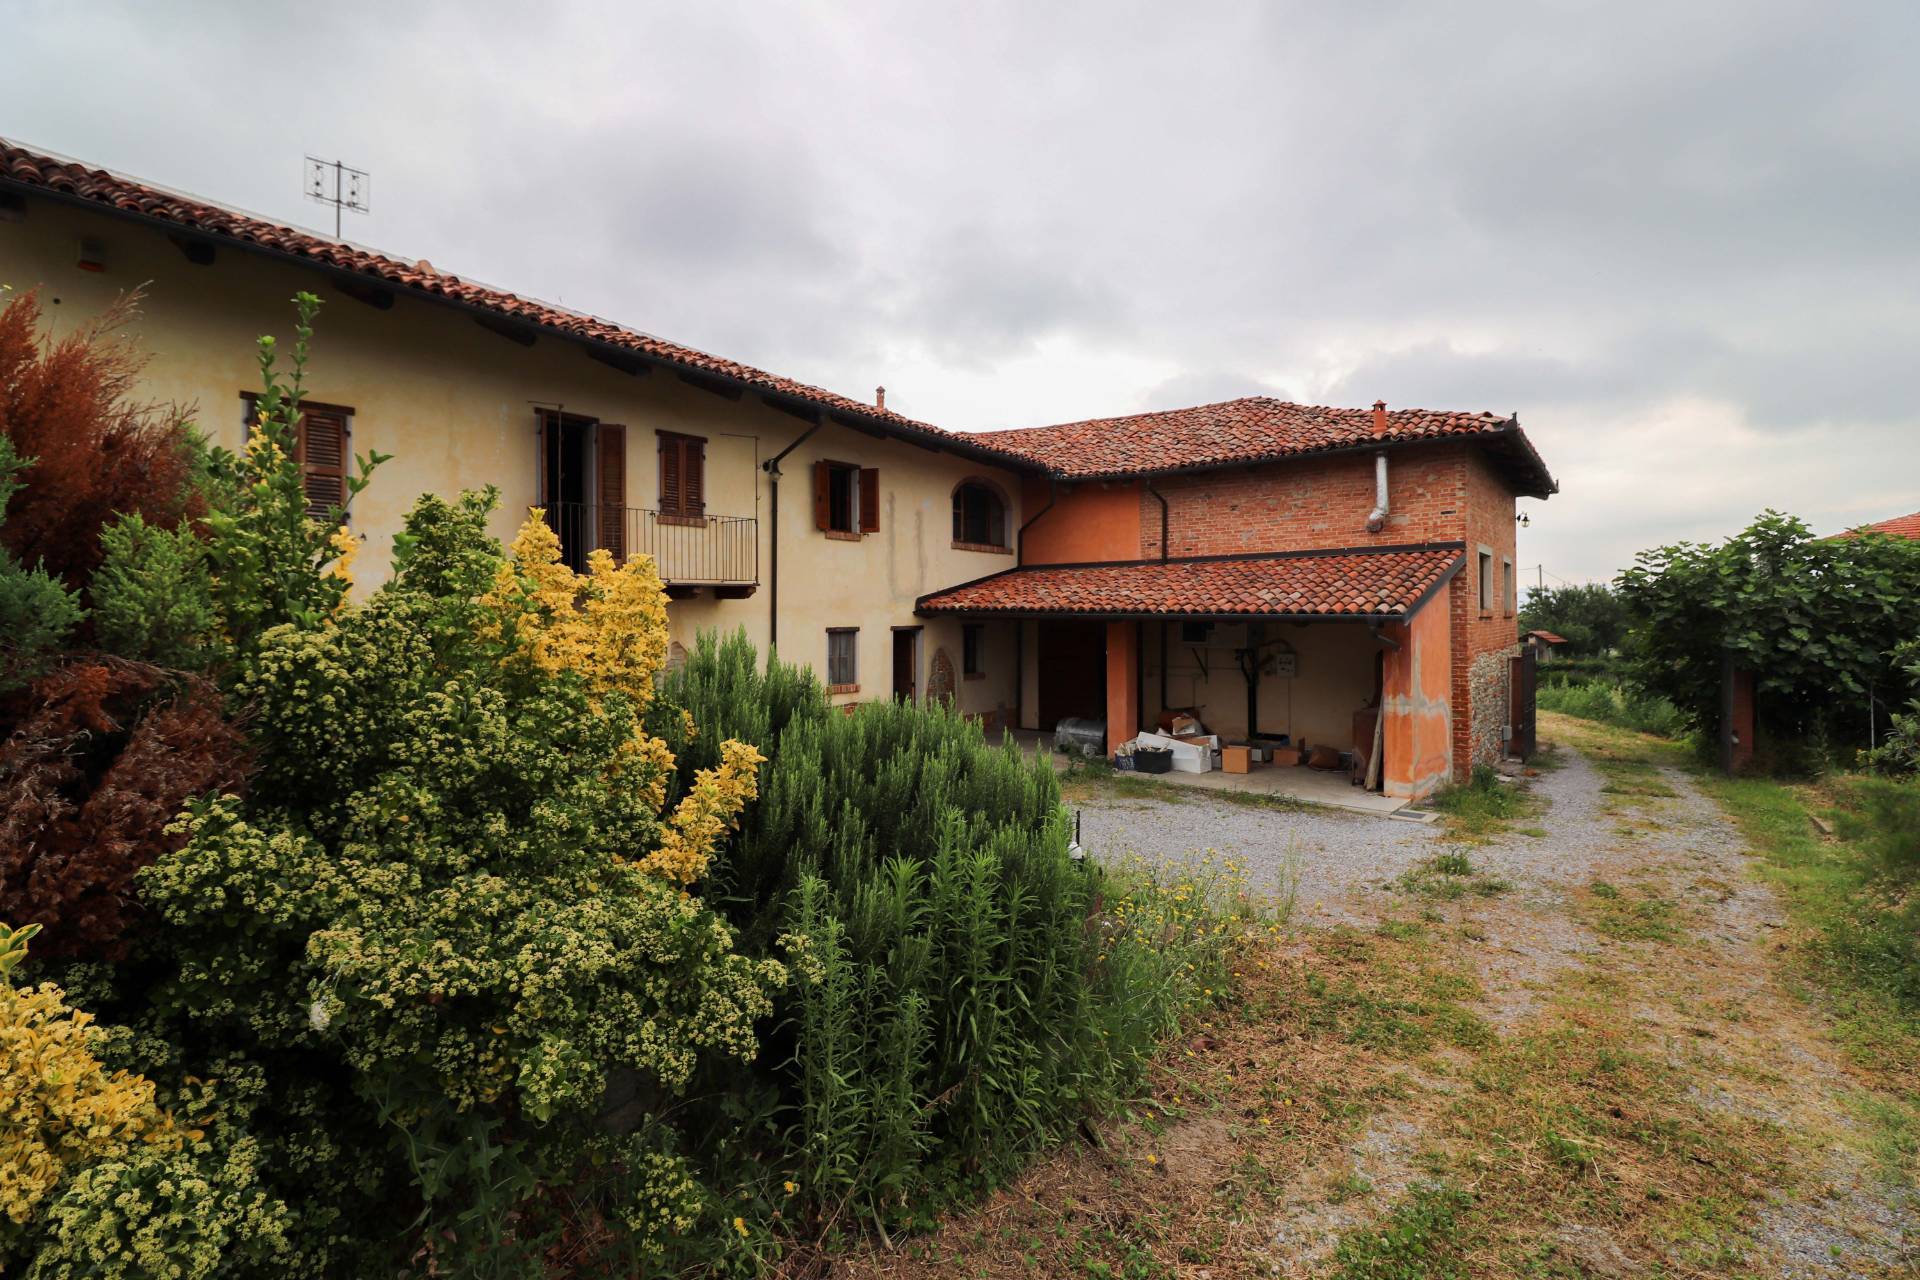 Rustico / Casale in vendita a Dogliani, 8 locali, prezzo € 1.450.000 | CambioCasa.it